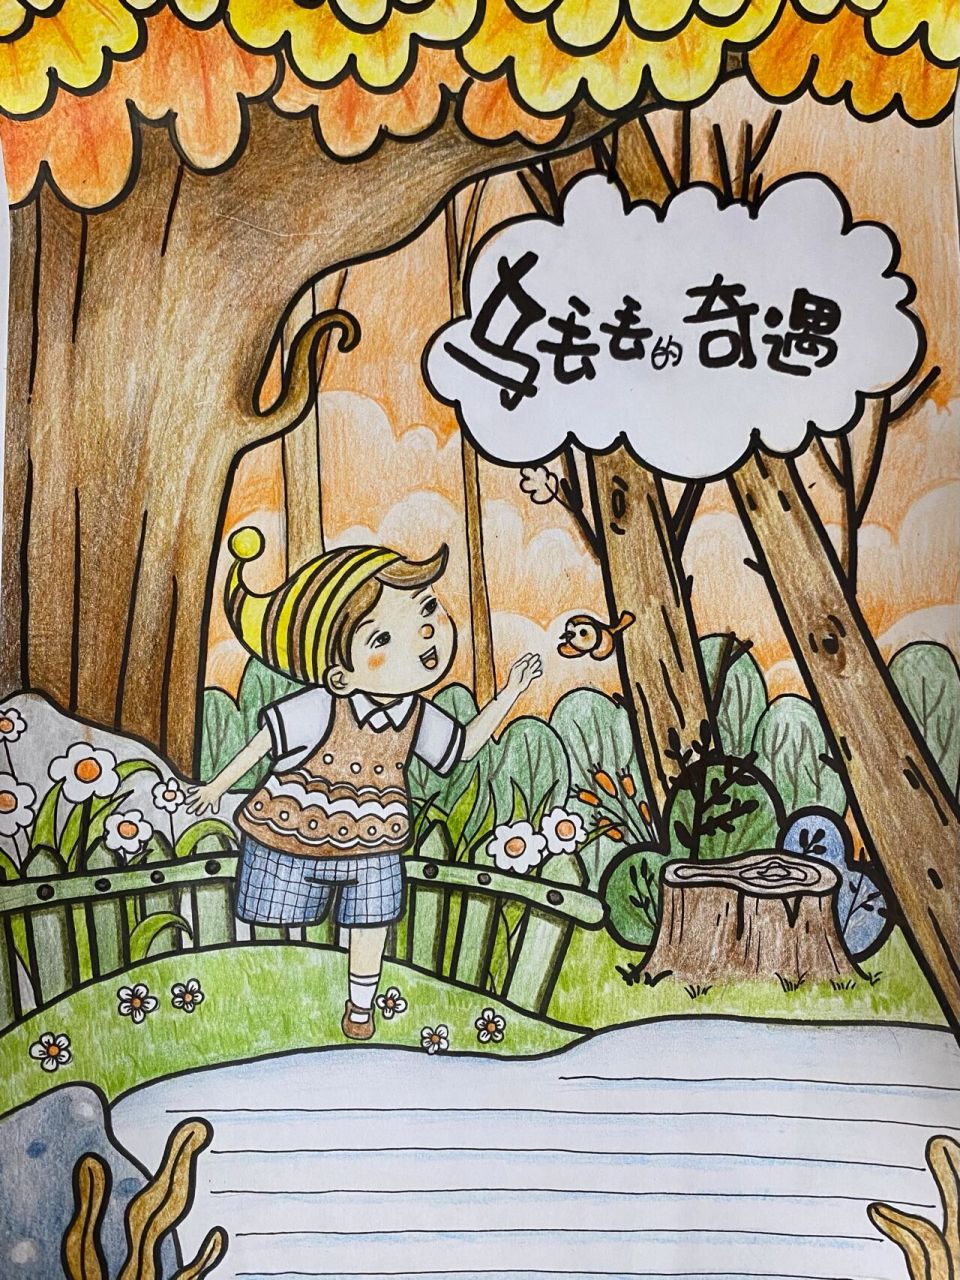 《乌丢丢的奇遇》小学生图书读后感儿童画配图 客稿,南京的就不要借鉴